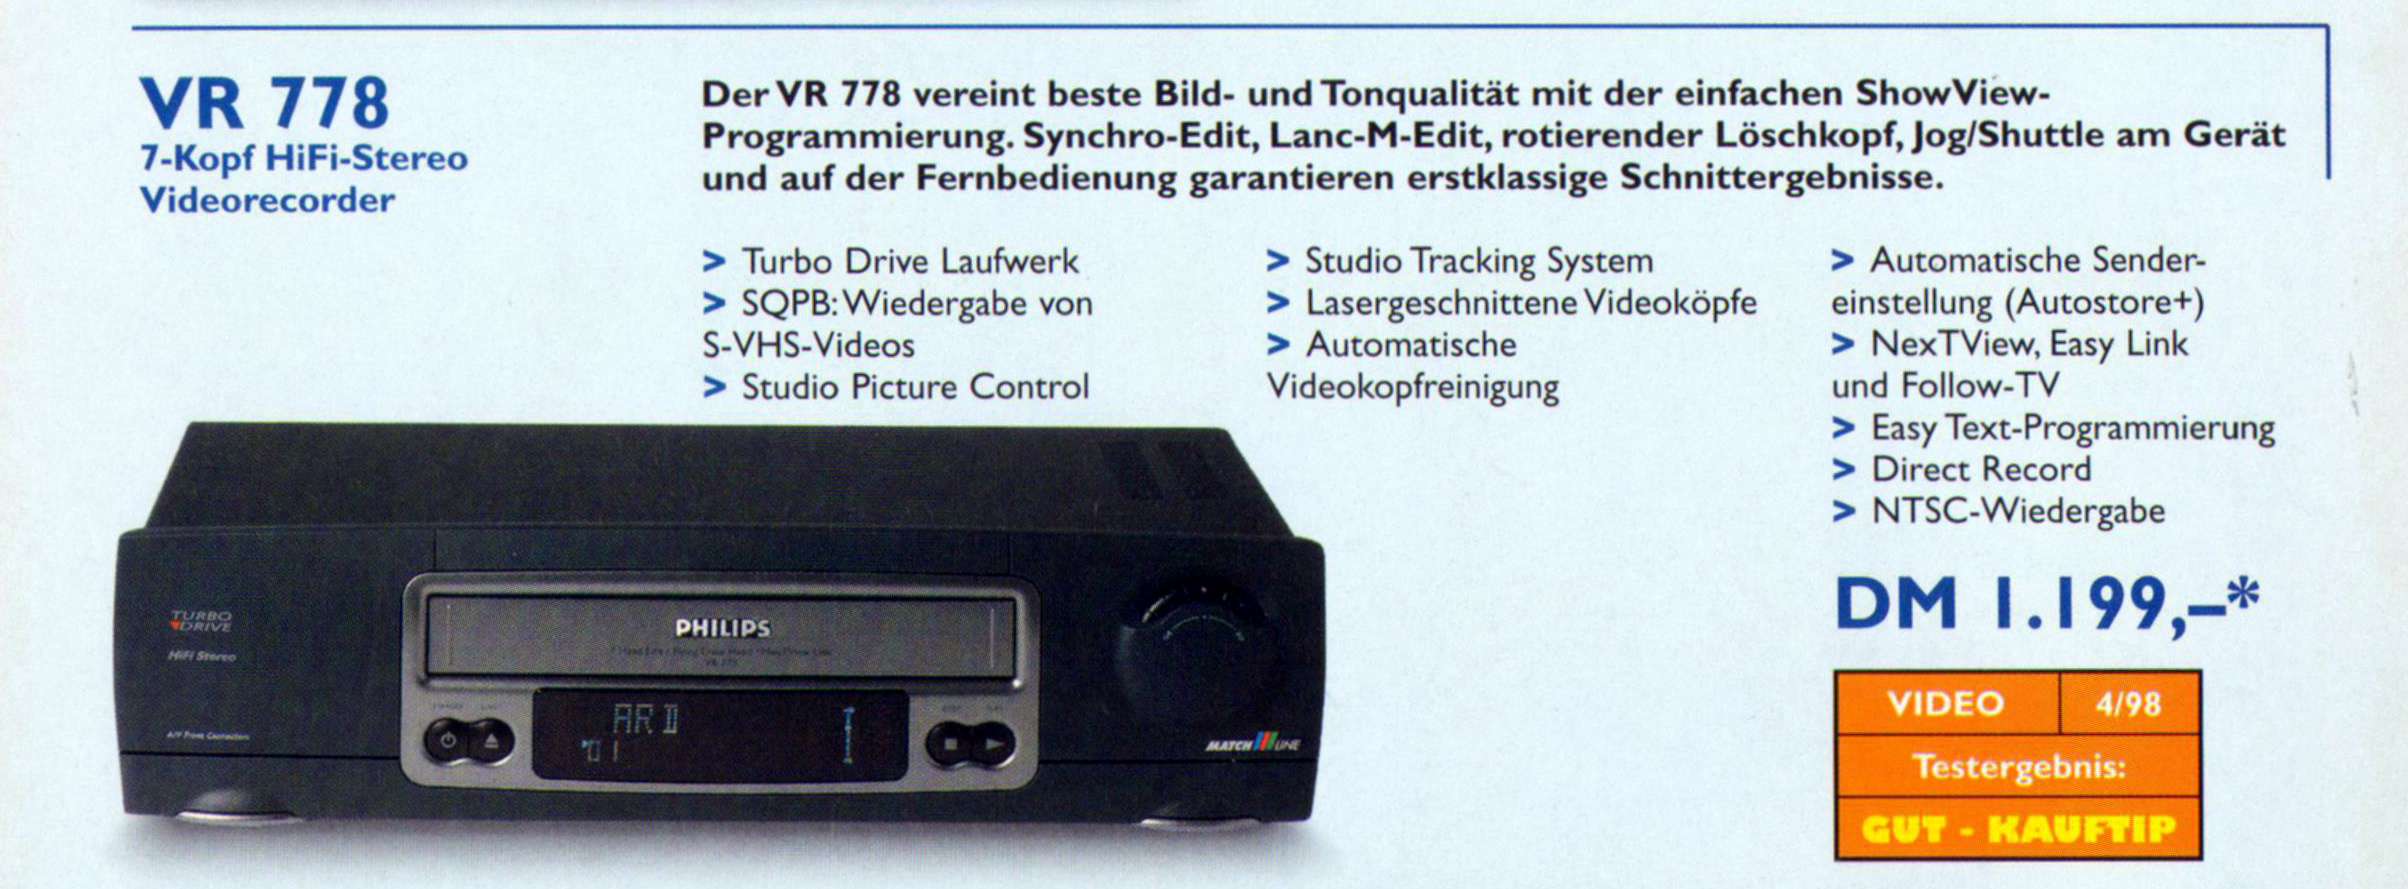 Philips VR-778-Prospekt-1998.jpg